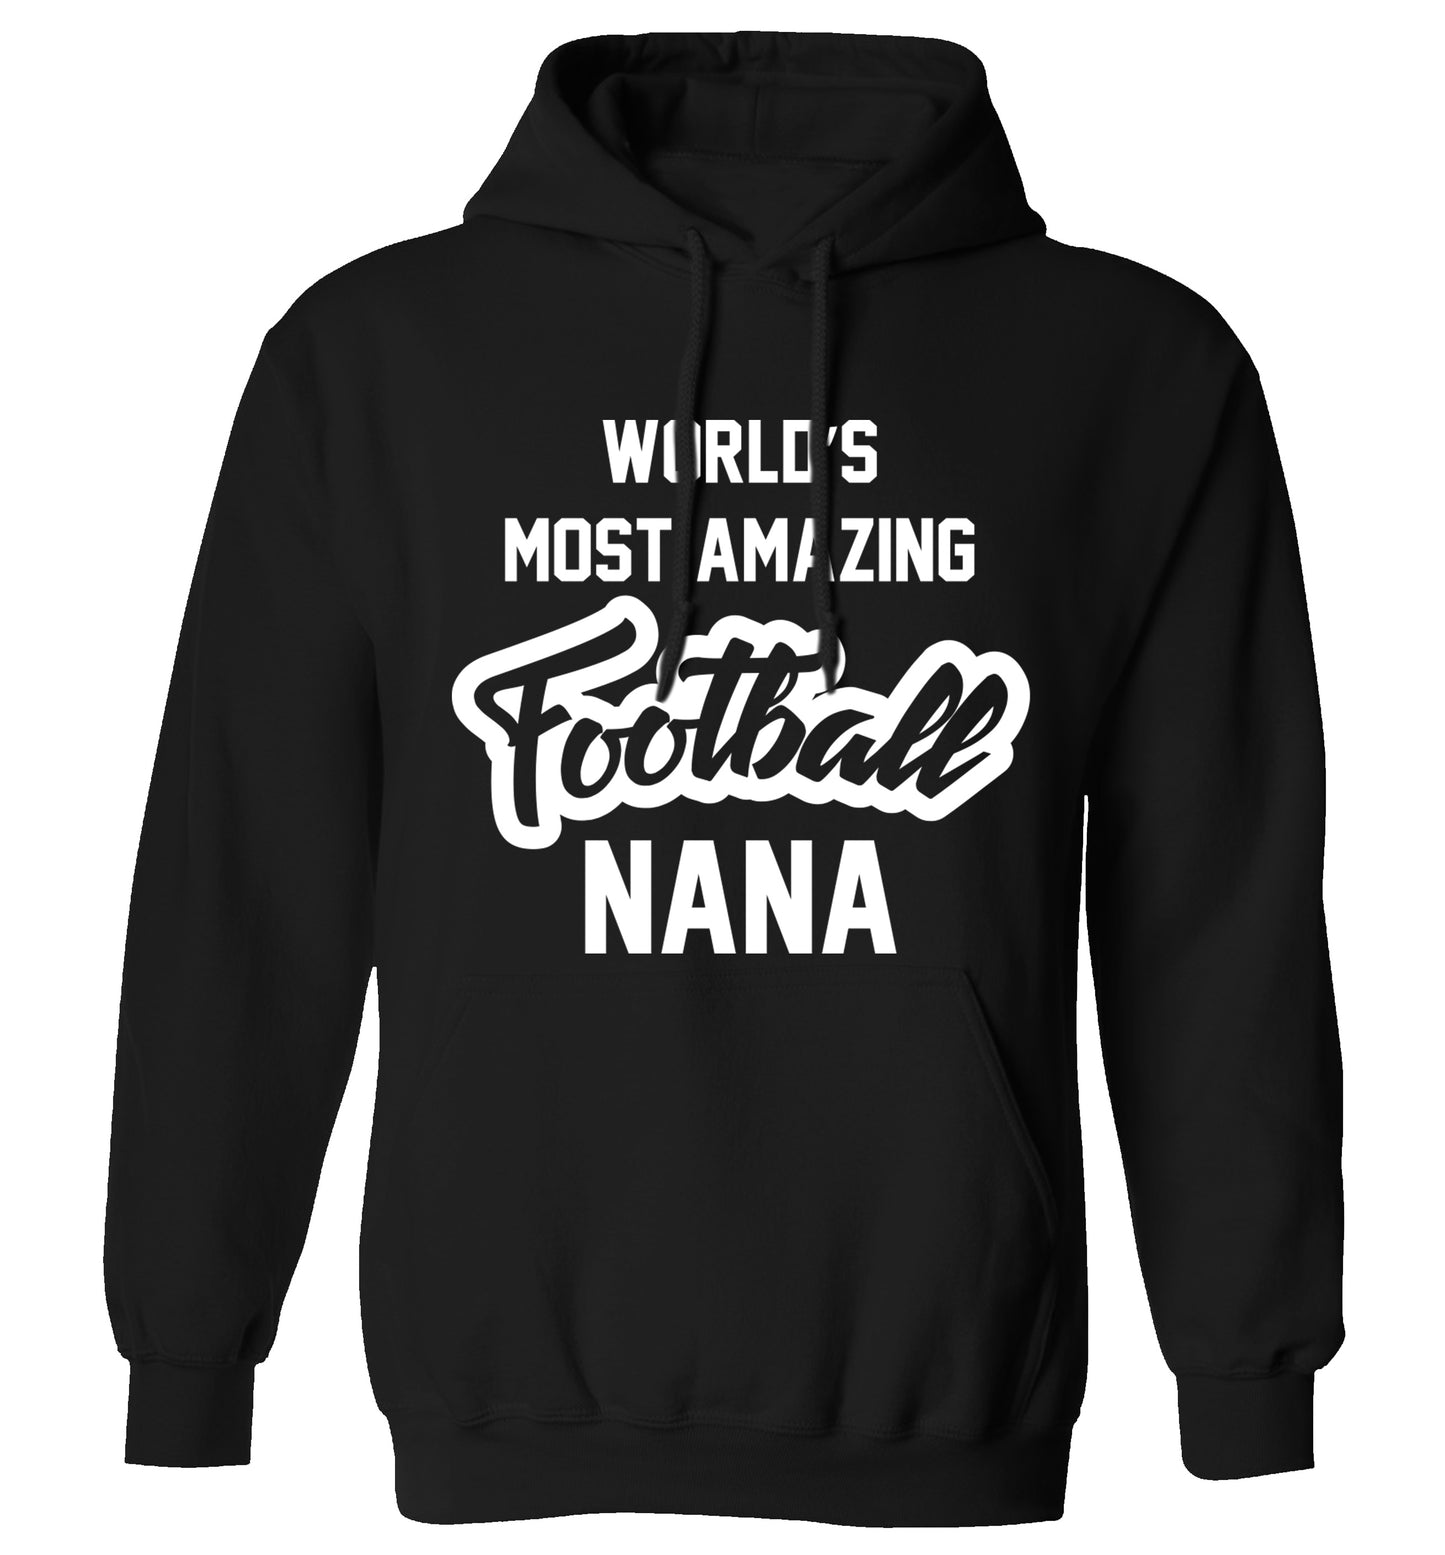 Worlds most amazing football nana adults unisexblack hoodie 2XL